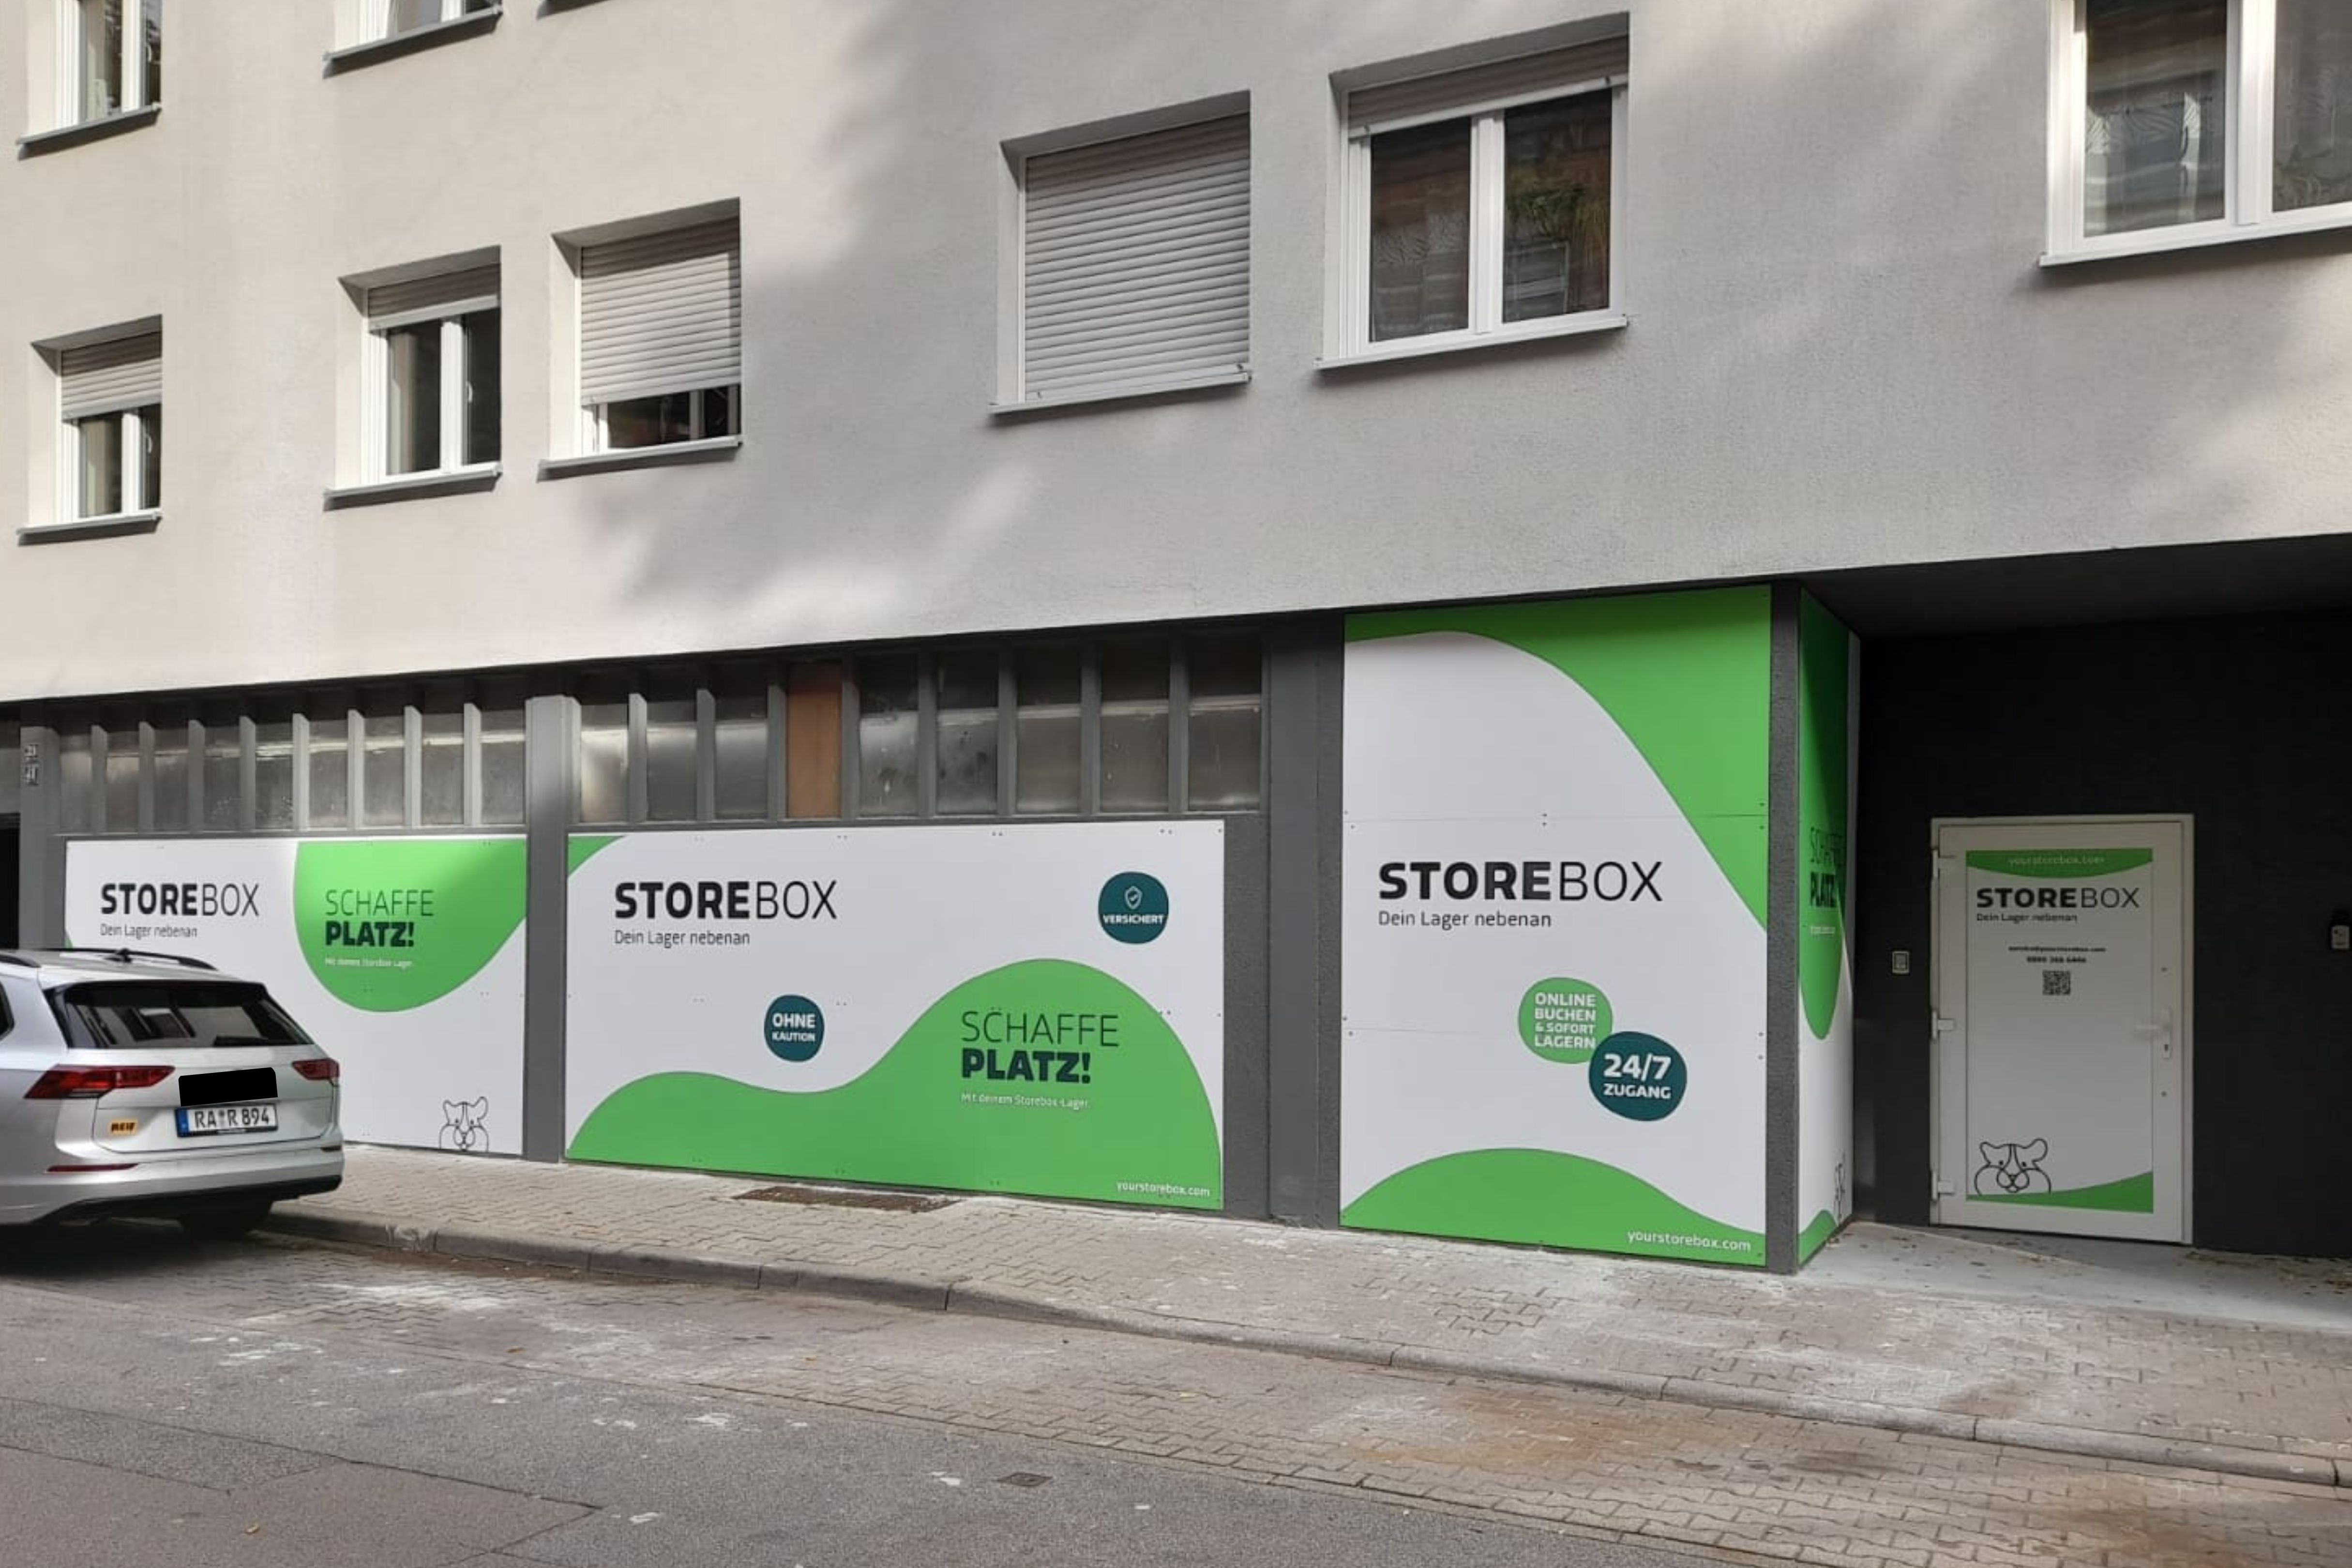 Storebox - Dein Lager nebenan, Bellenstraße 39-41 in Mannheim